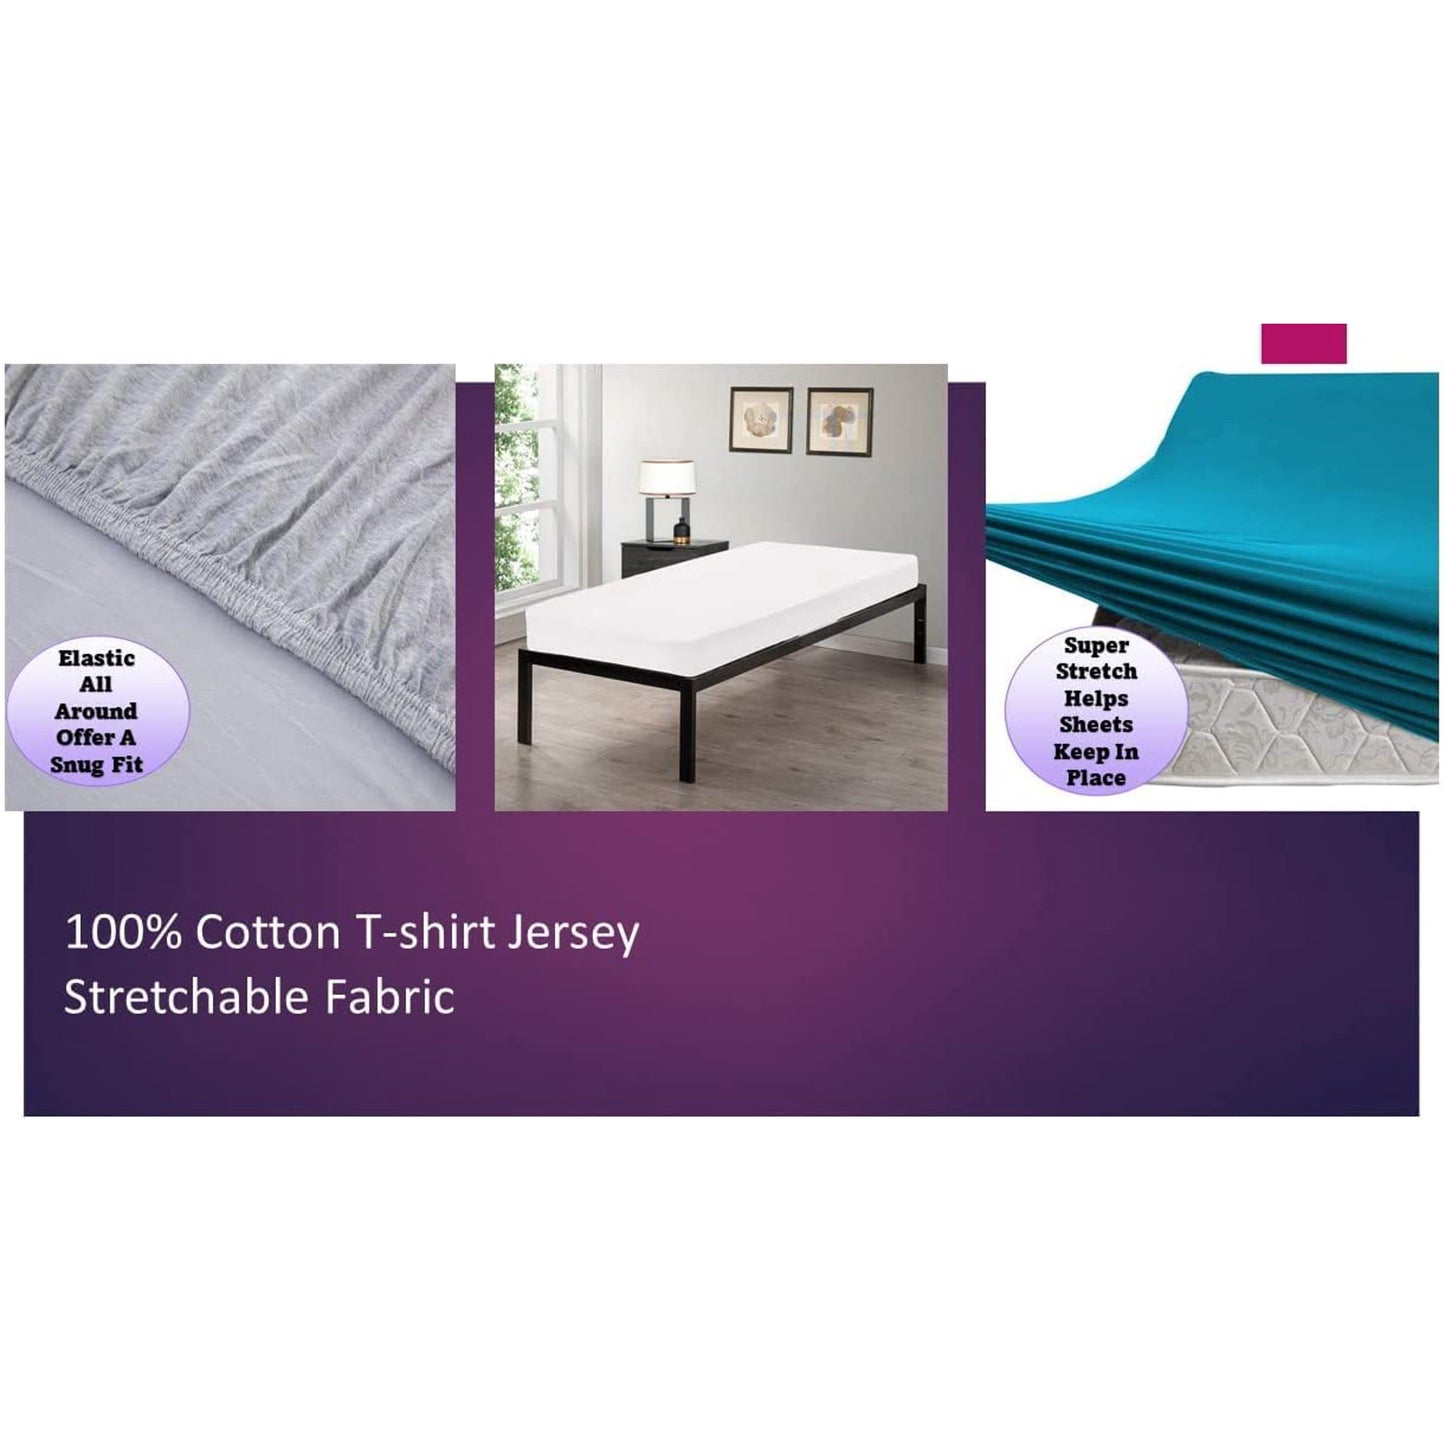 100% Combed T-Shirt Cotton Jersey Knit Camp Sheet Set, 1 Fitted cot Sheet, 1 Flat Sheet, 1 Standard Pillow case Light Blue